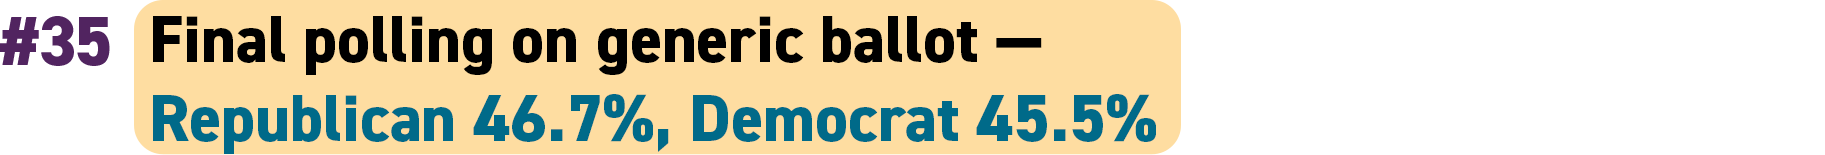 35. Final polling on generic ballot — Republican 46.7 percent, Democrat 45.5 percent